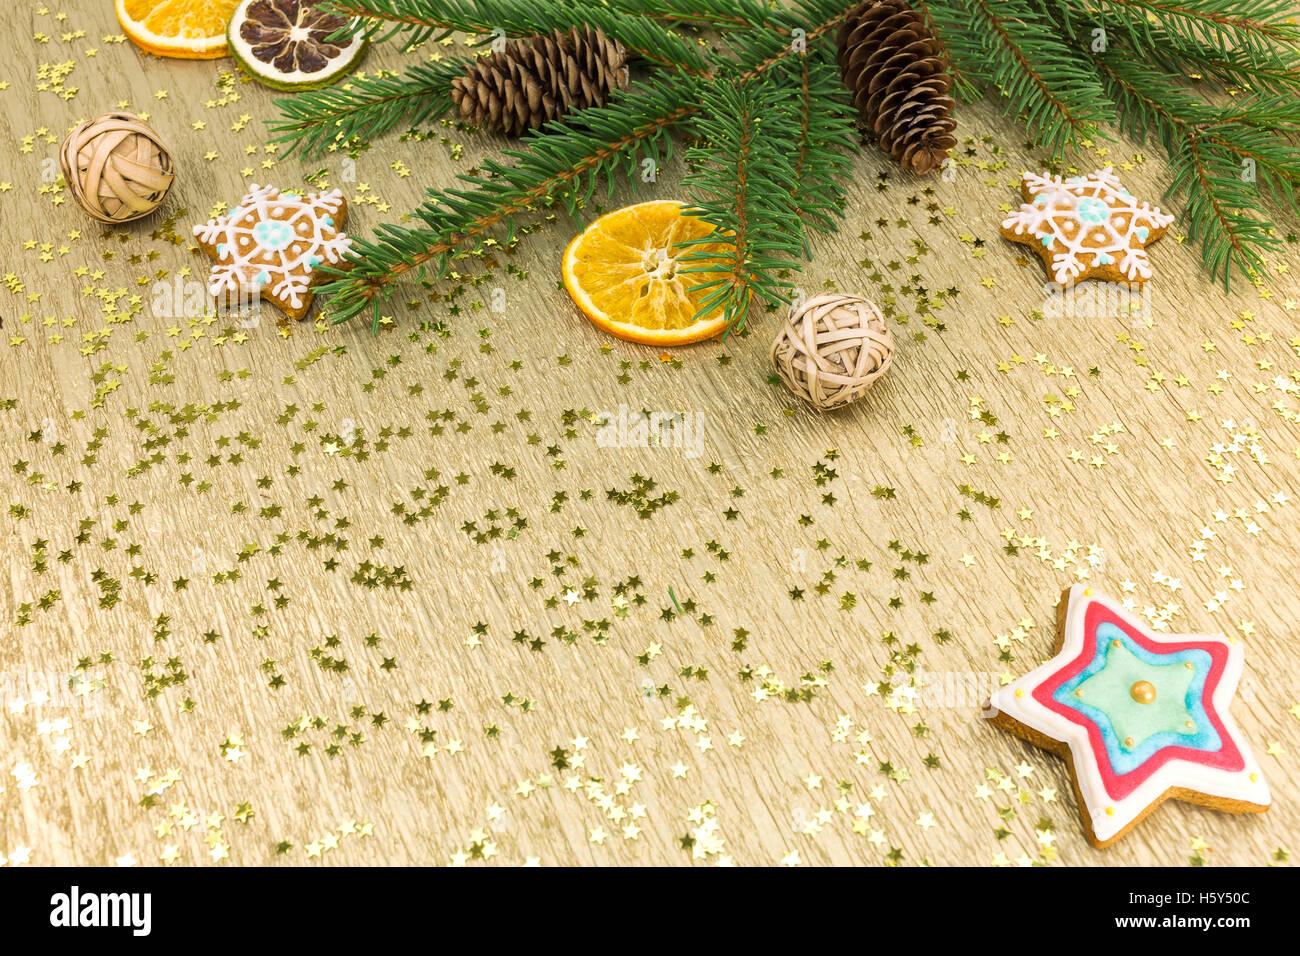 Weihnachtsschmuck und Lebkuchen auf goldenem Hintergrund Stockfoto